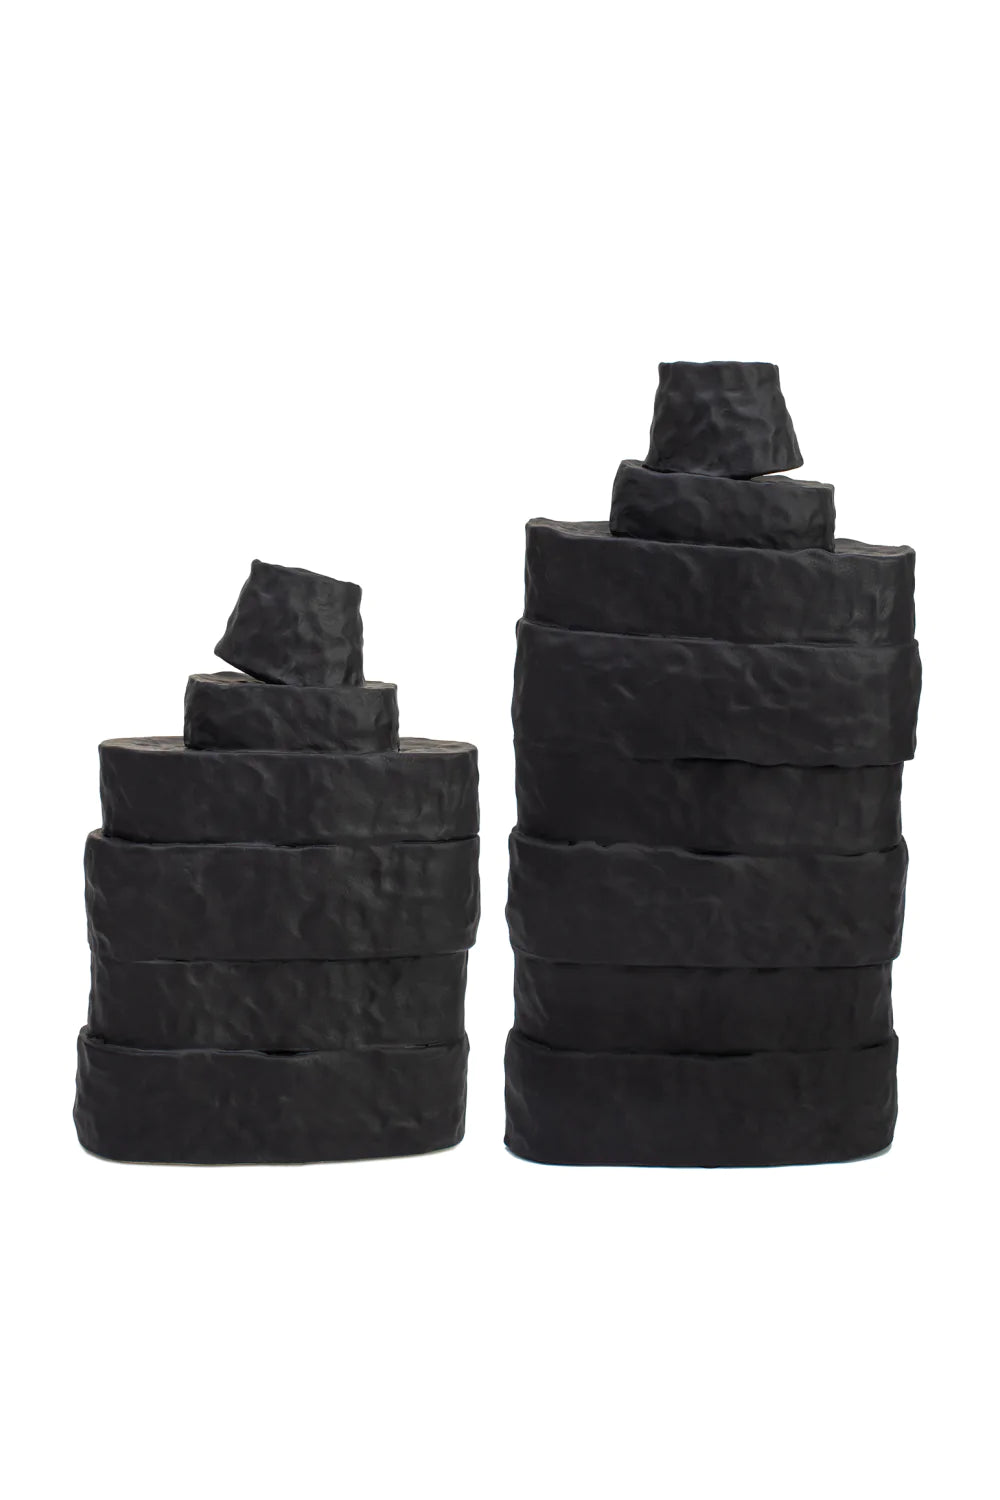 Black Ceramic Modern Vase | Liang & Eimil Girton | Oroa.com